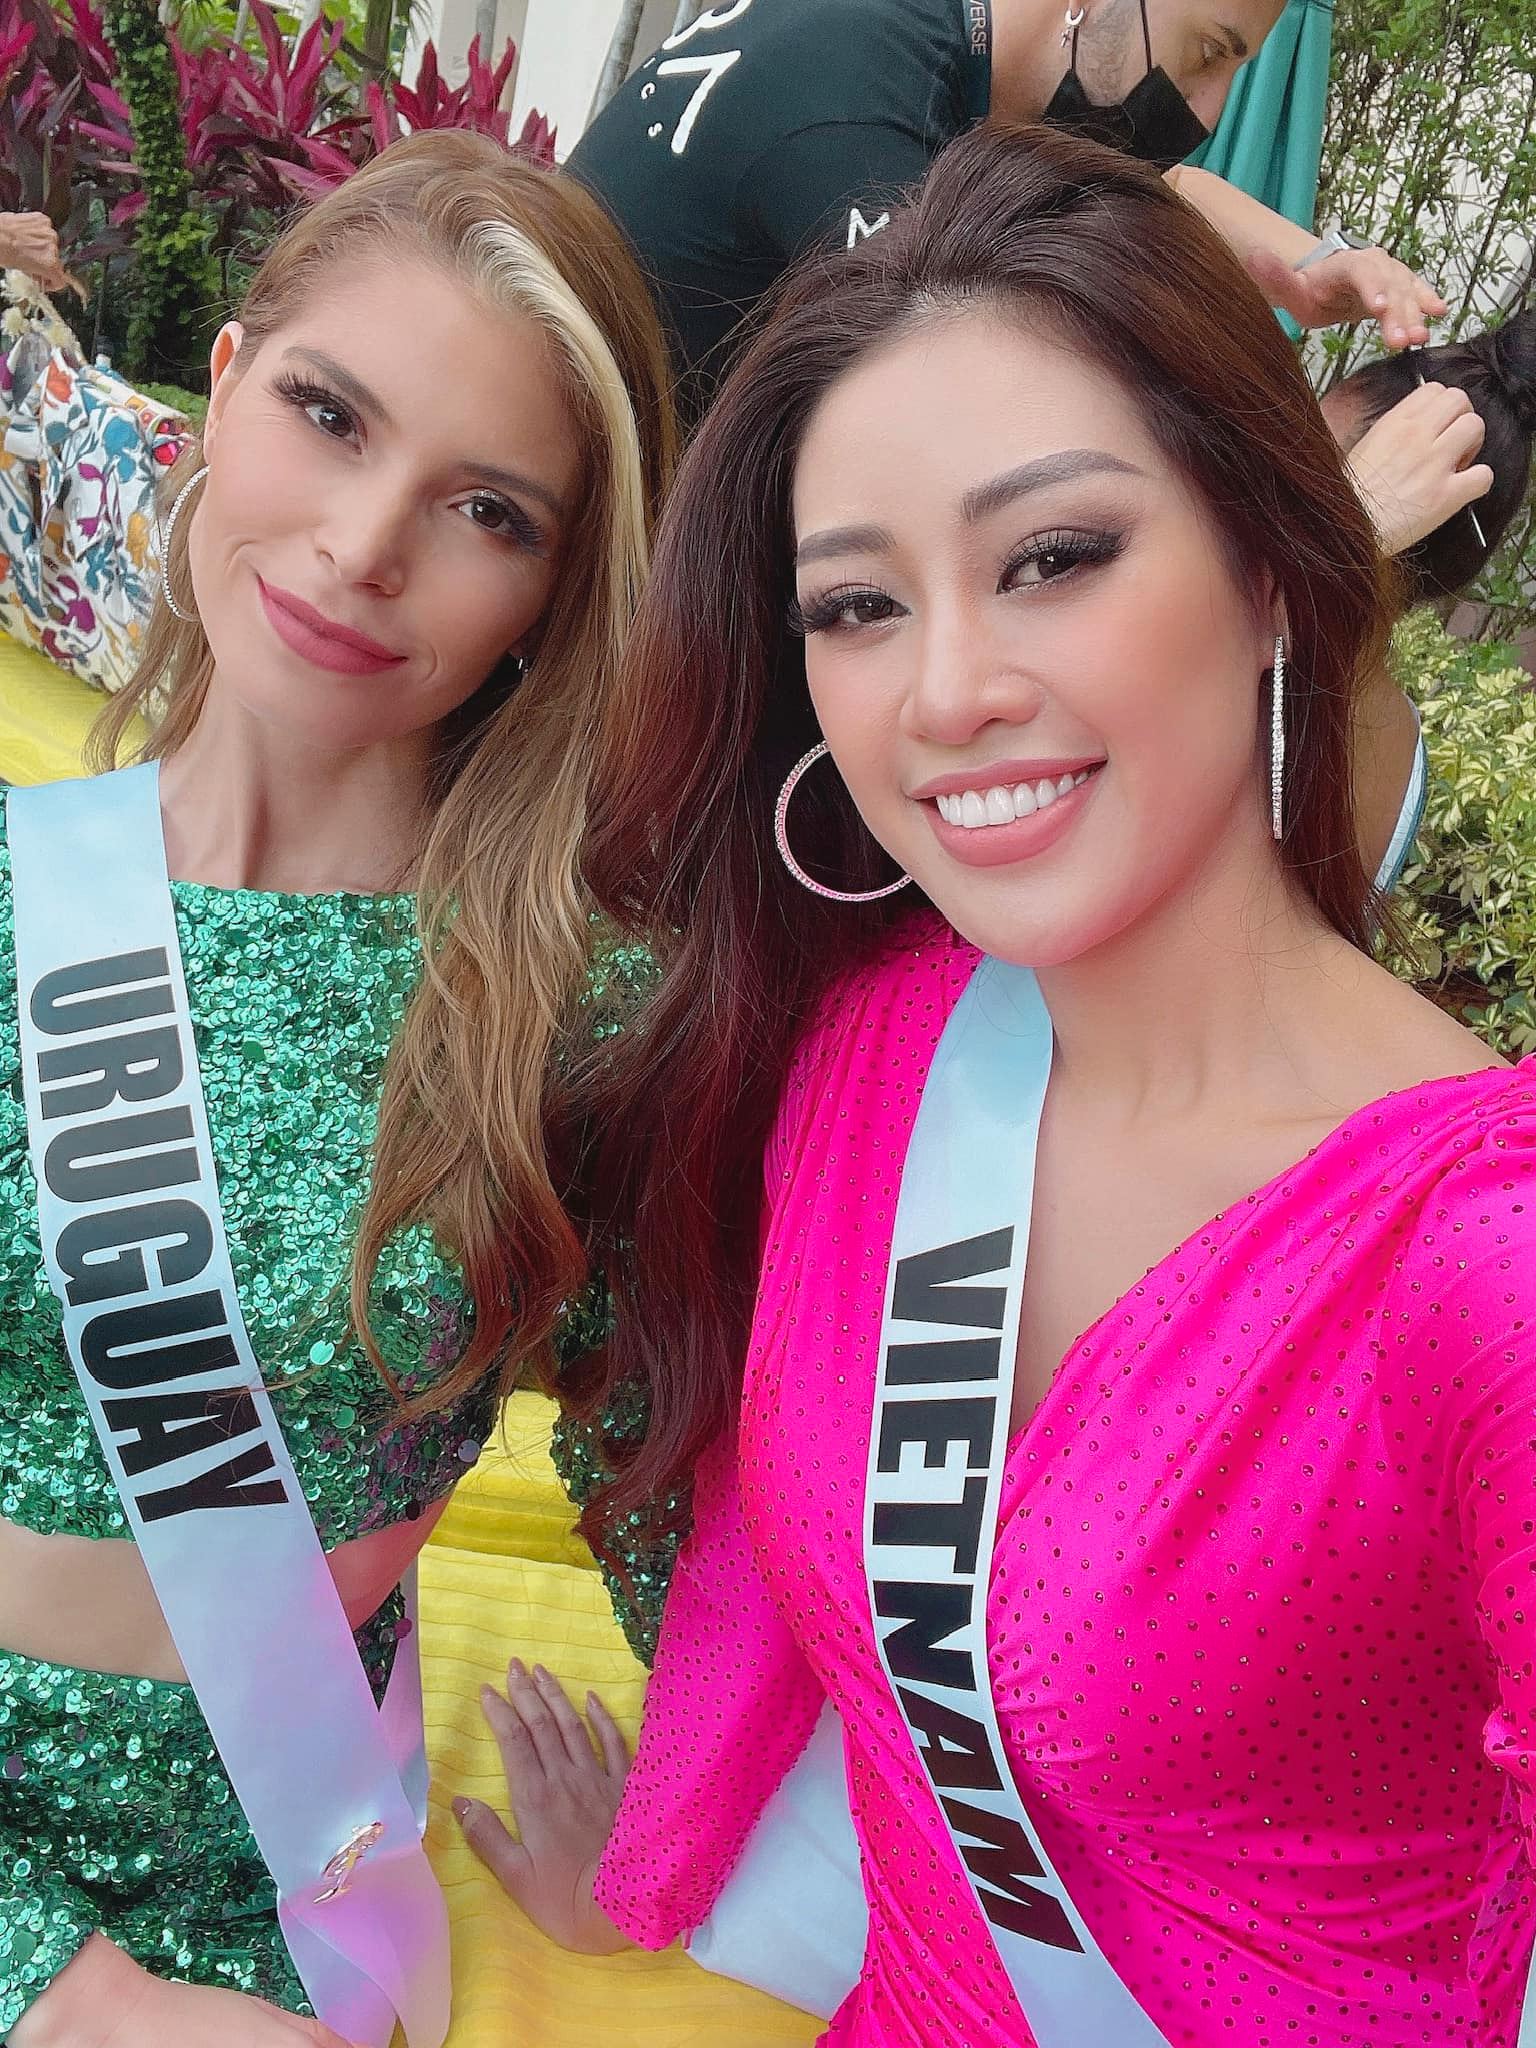 Ngày thứ 4 của Khánh Vân tại Miss Universe: 'Chặt chém' với váy hồng rực rỡ, tăng vọt thứ hạng từ top 21 lên top 12 5